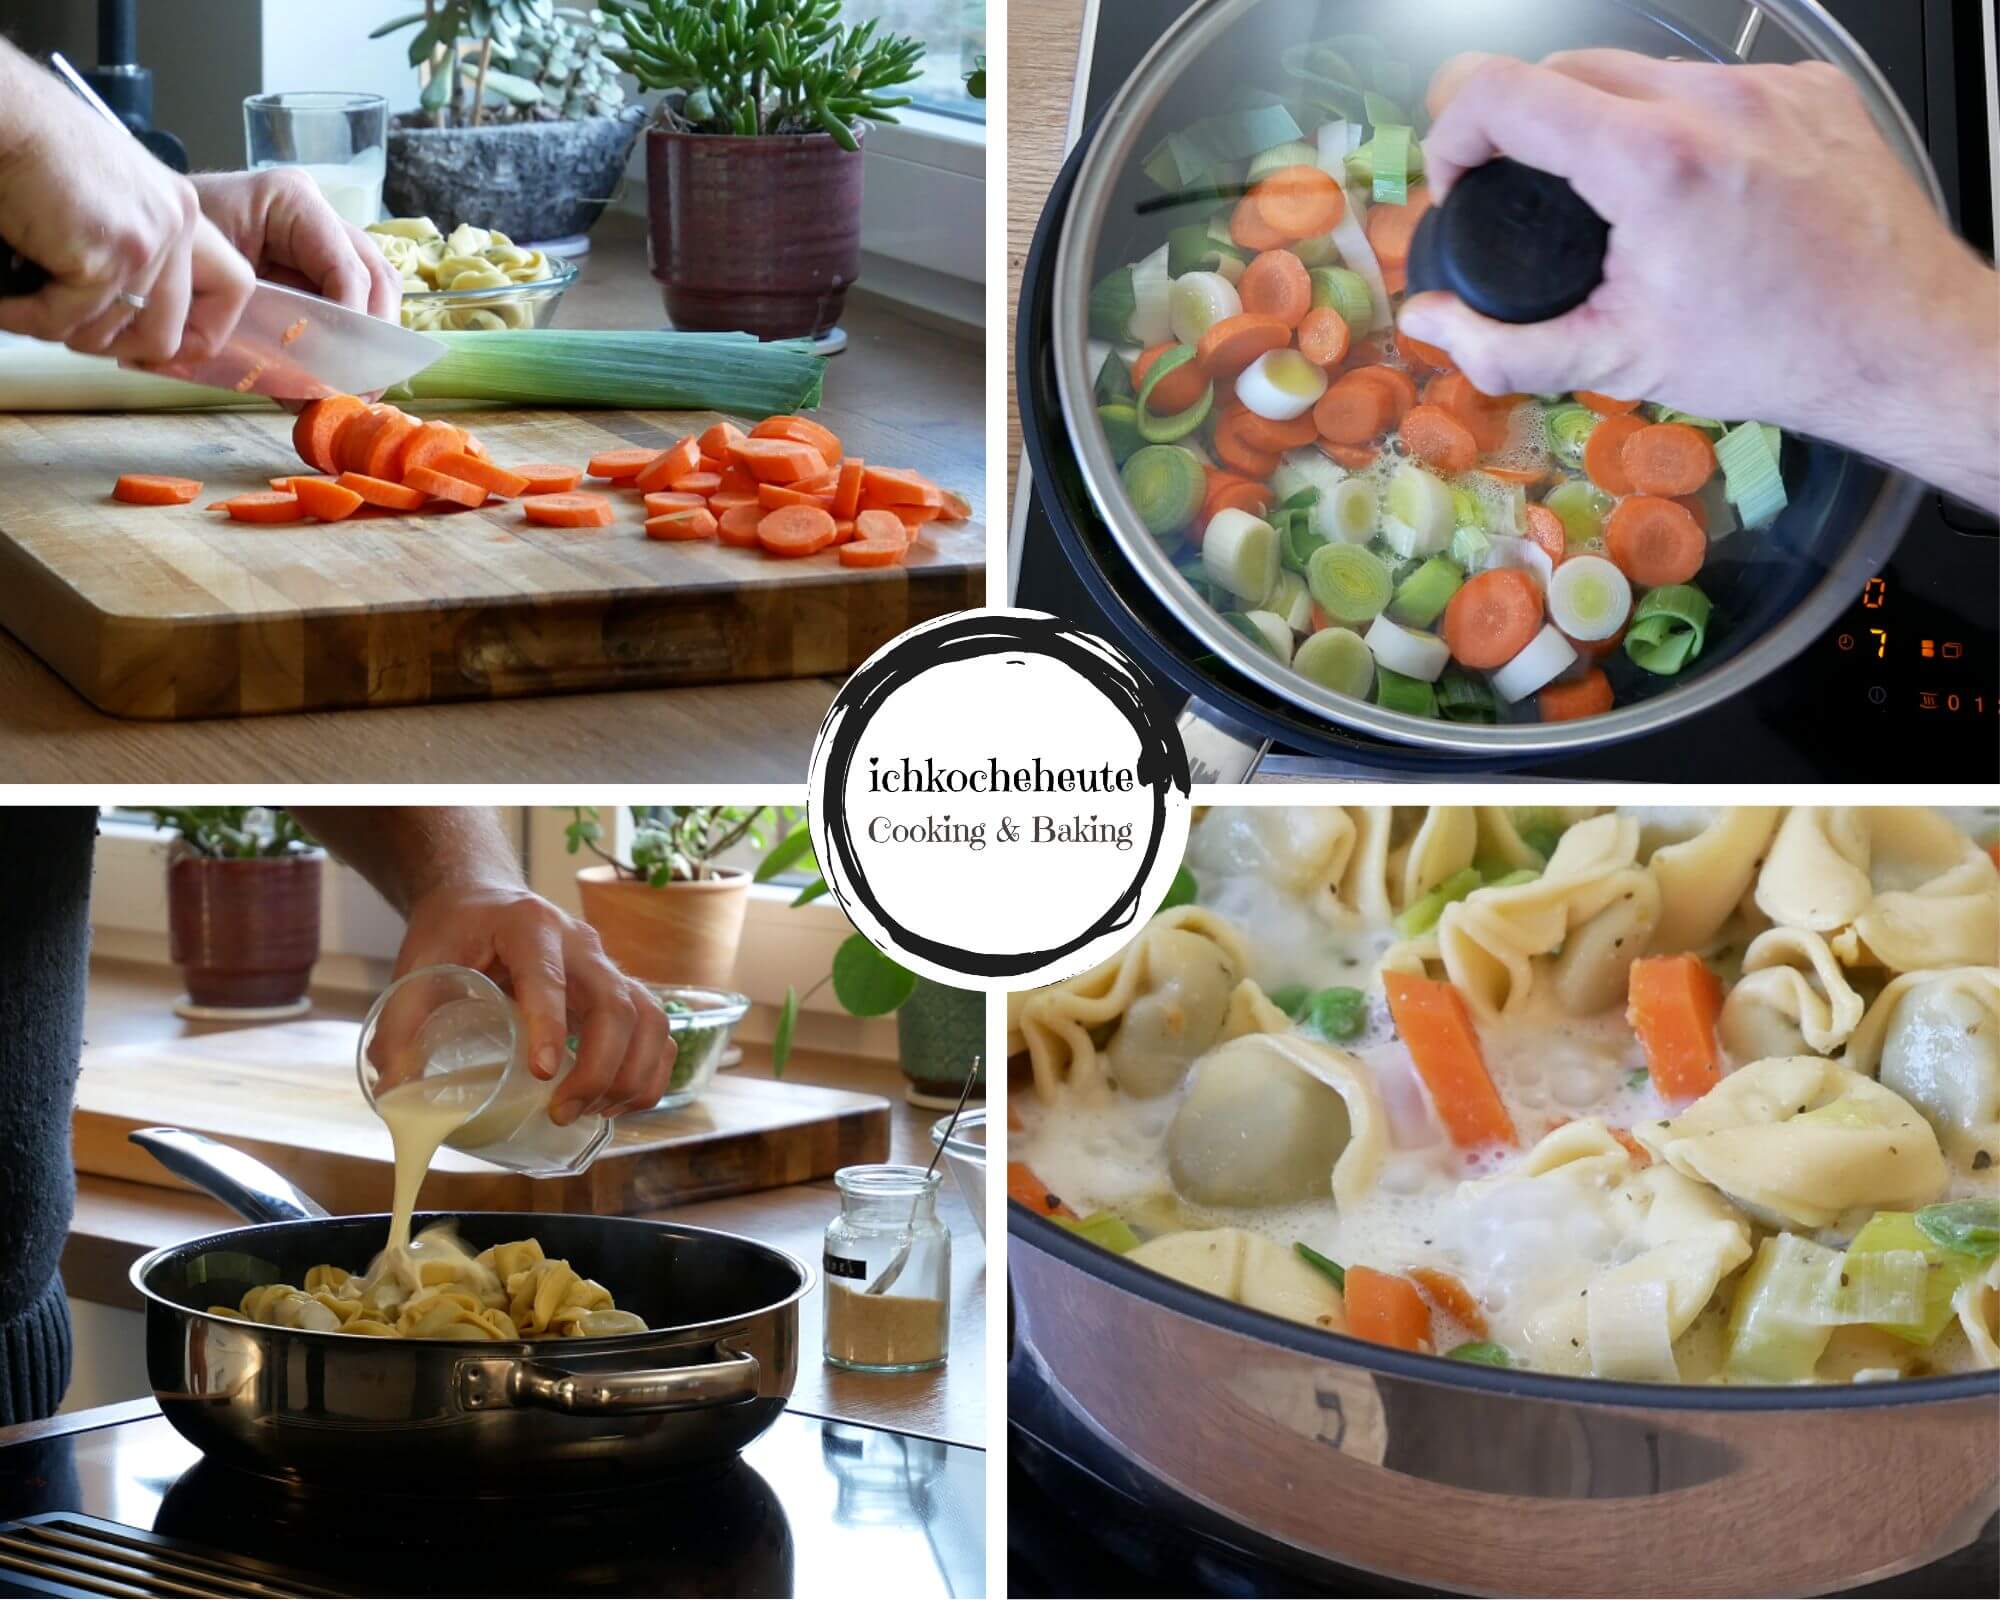 Preparing Colorful Tortellini Stir-Fry with Carrots, Leek & Peas